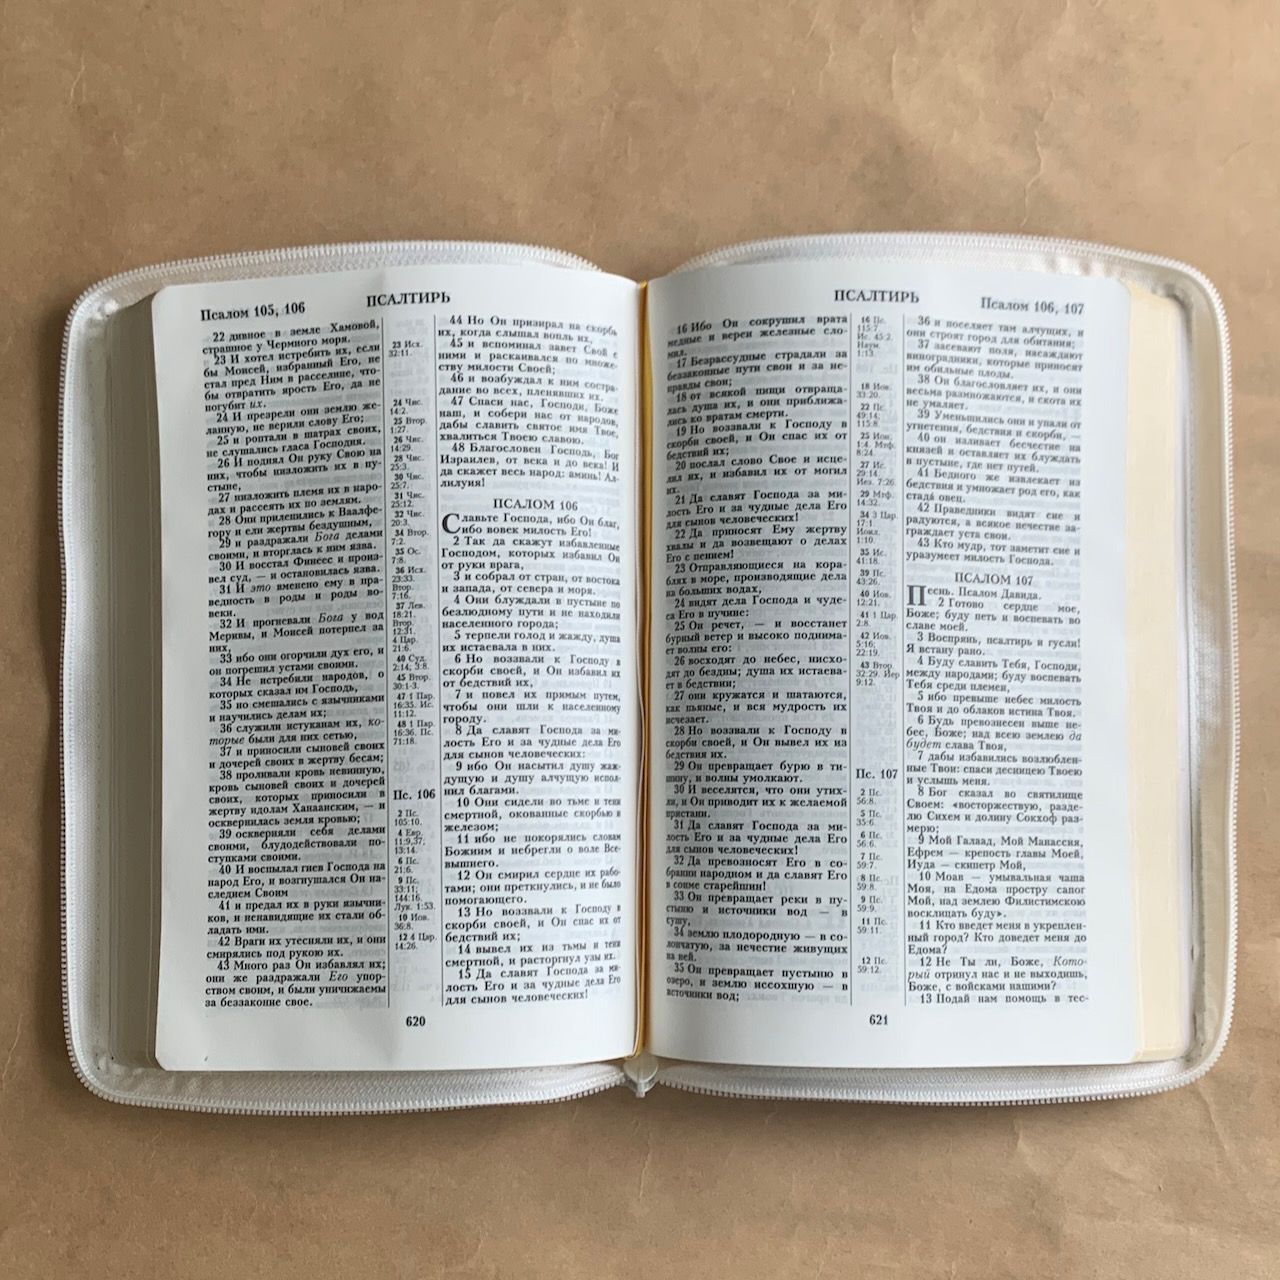 Библия 076z код B8, дизайн "золотая рамка с виноградной лозой", кожаный переплет на молнии, цвет белый пятнистый, размер 180x243 мм